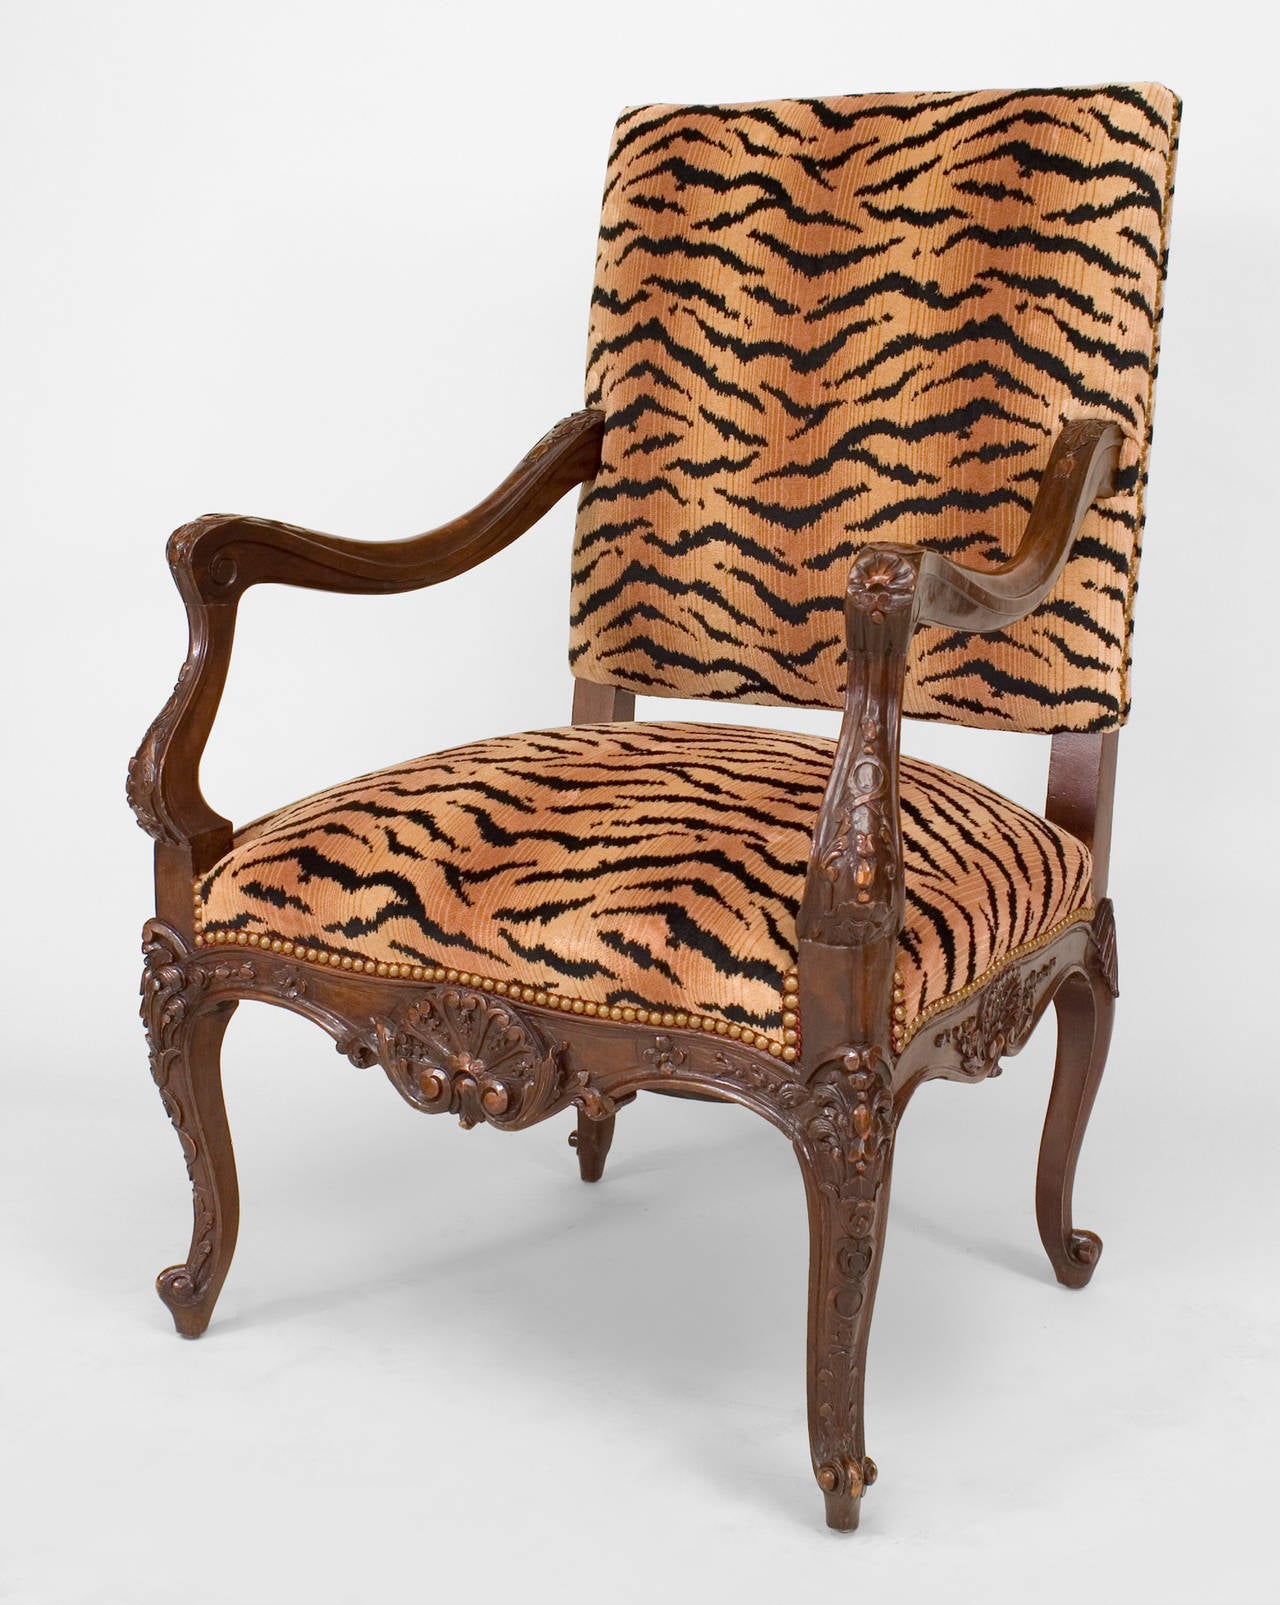 Fauteuil ouvert en noyer sculpté de style Régence (19e/20e siècle) avec assise et dossier tapissés de faux tigre.
